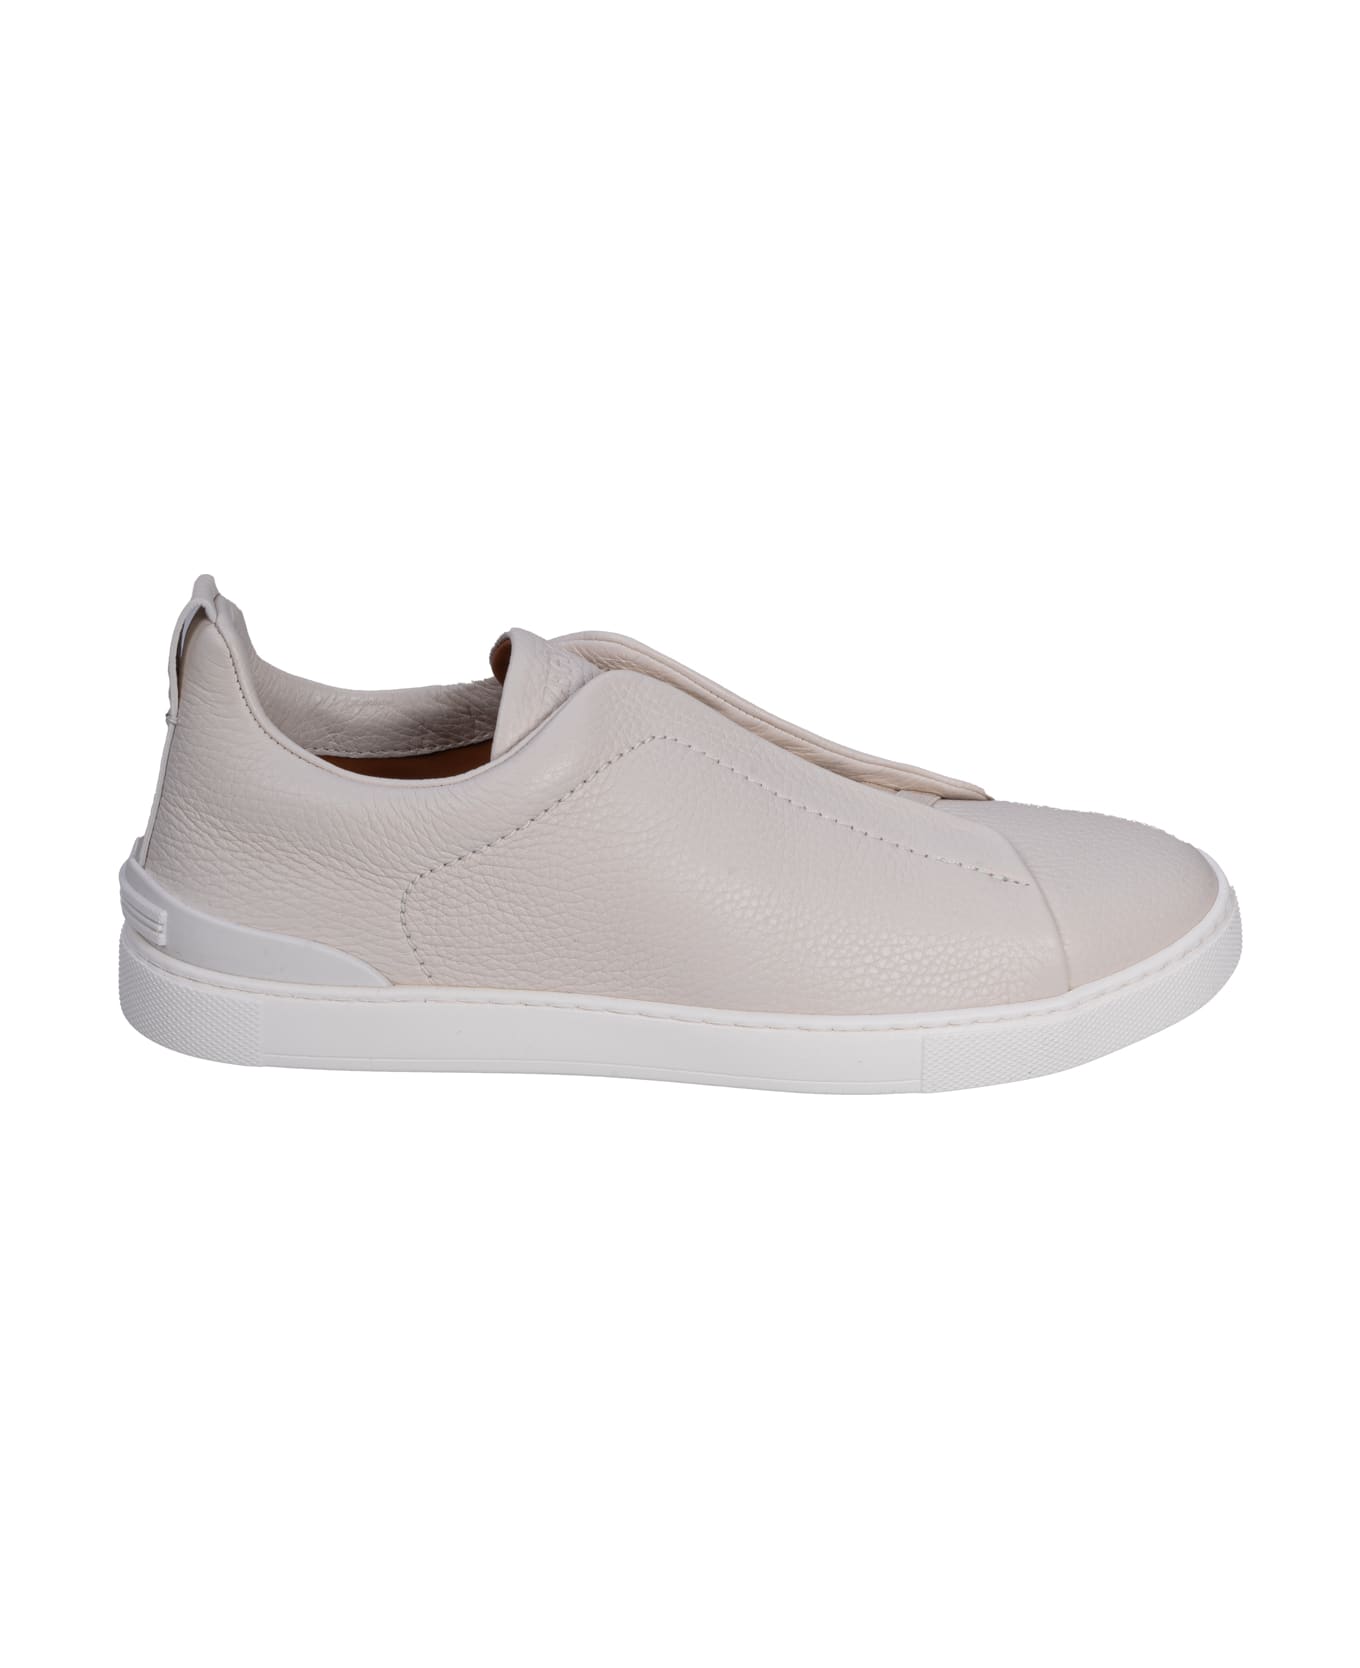 Zegna Flat Shoes White - White スニーカー